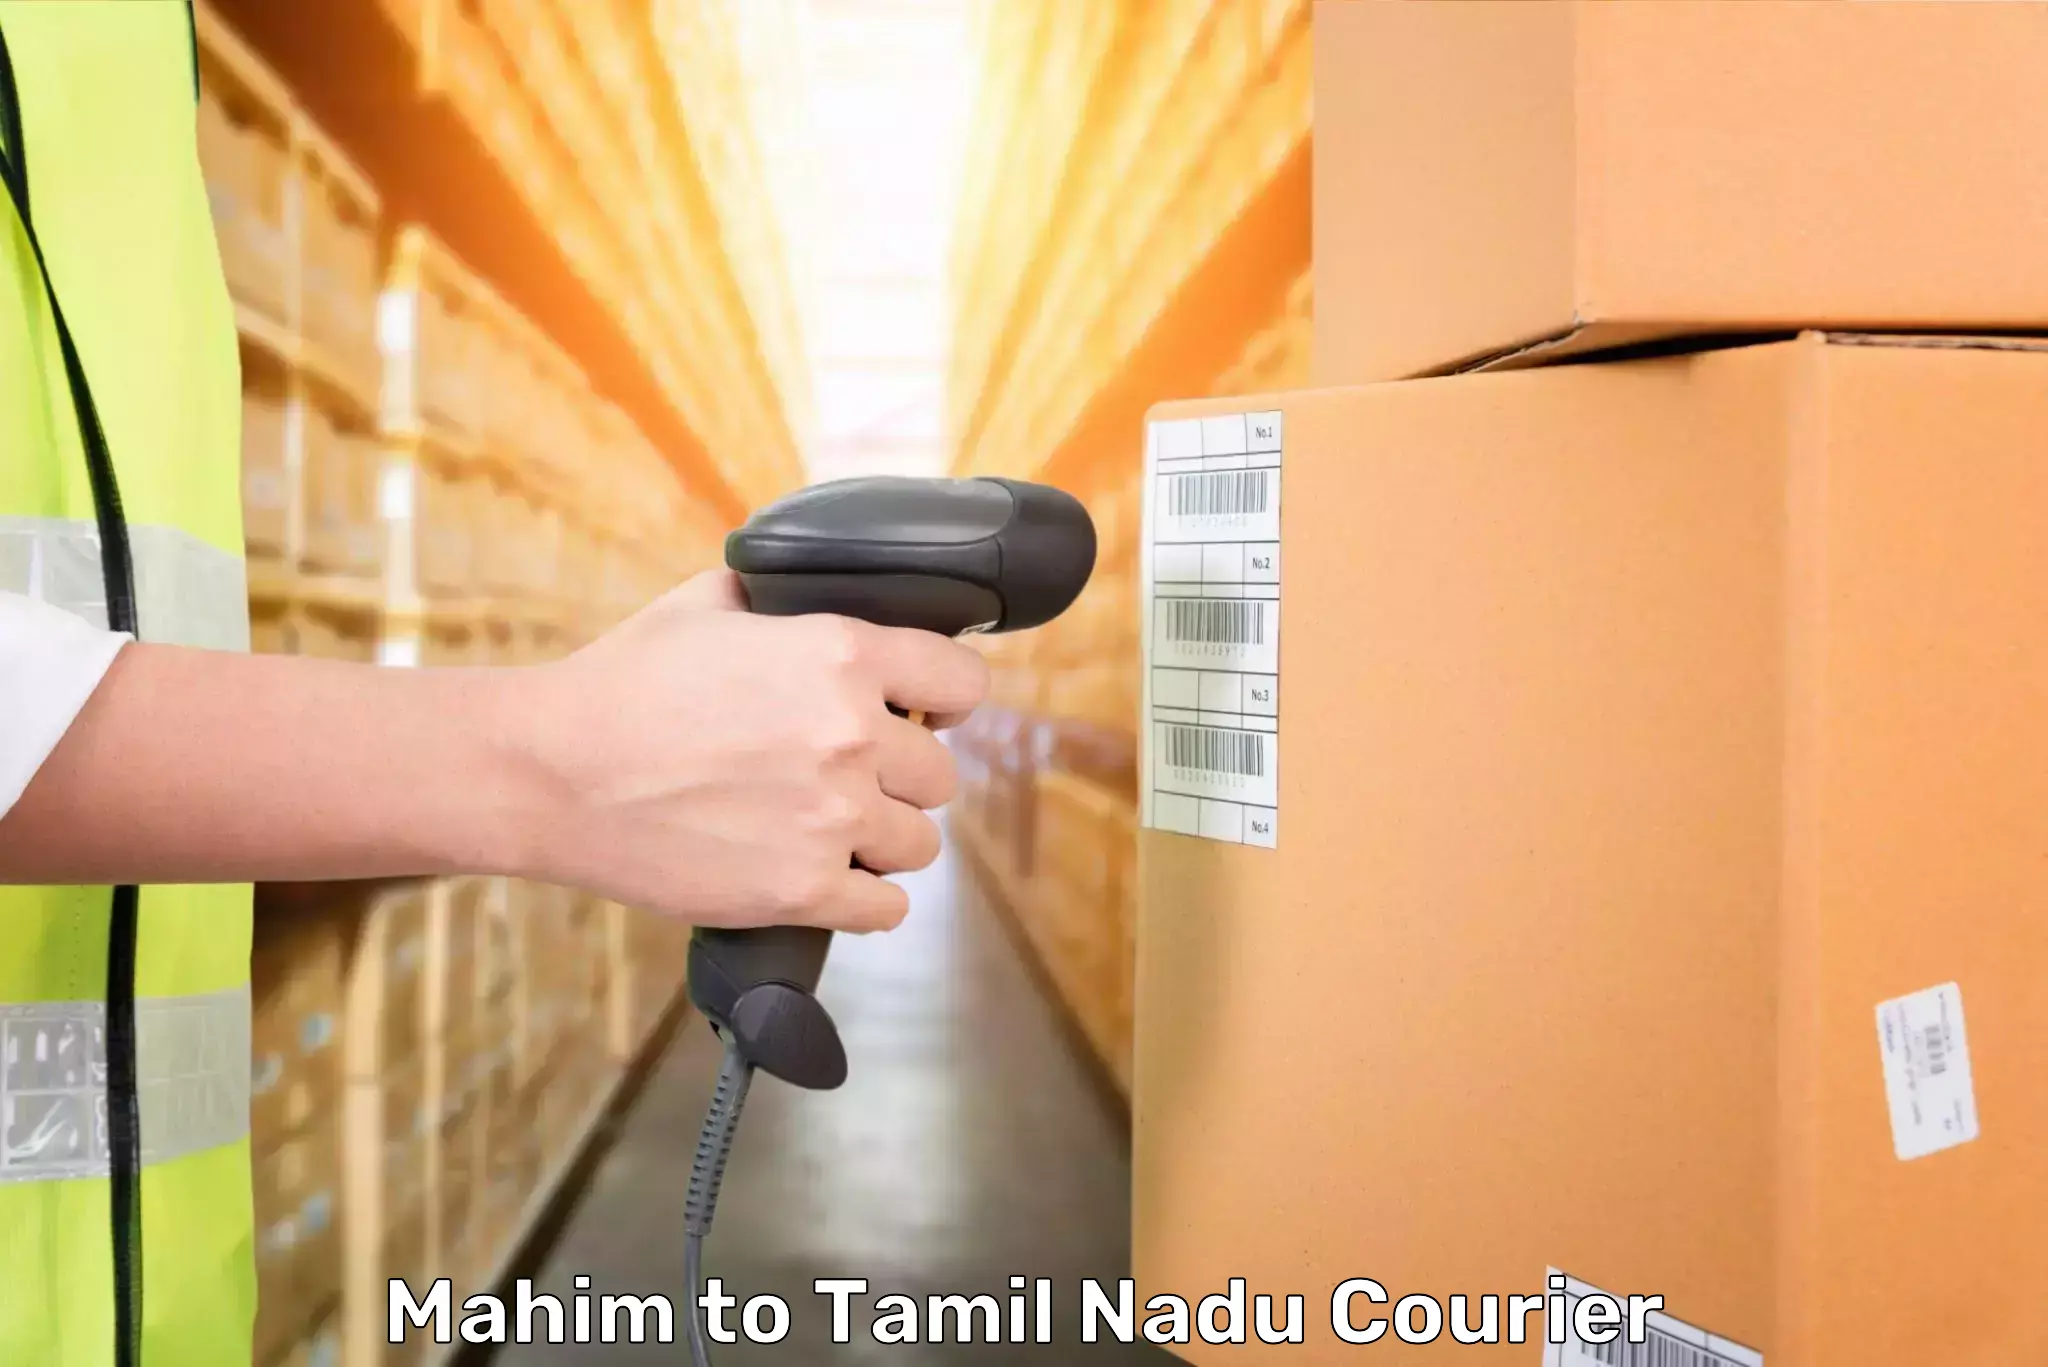 Door-to-door baggage service Mahim to Tamil Nadu